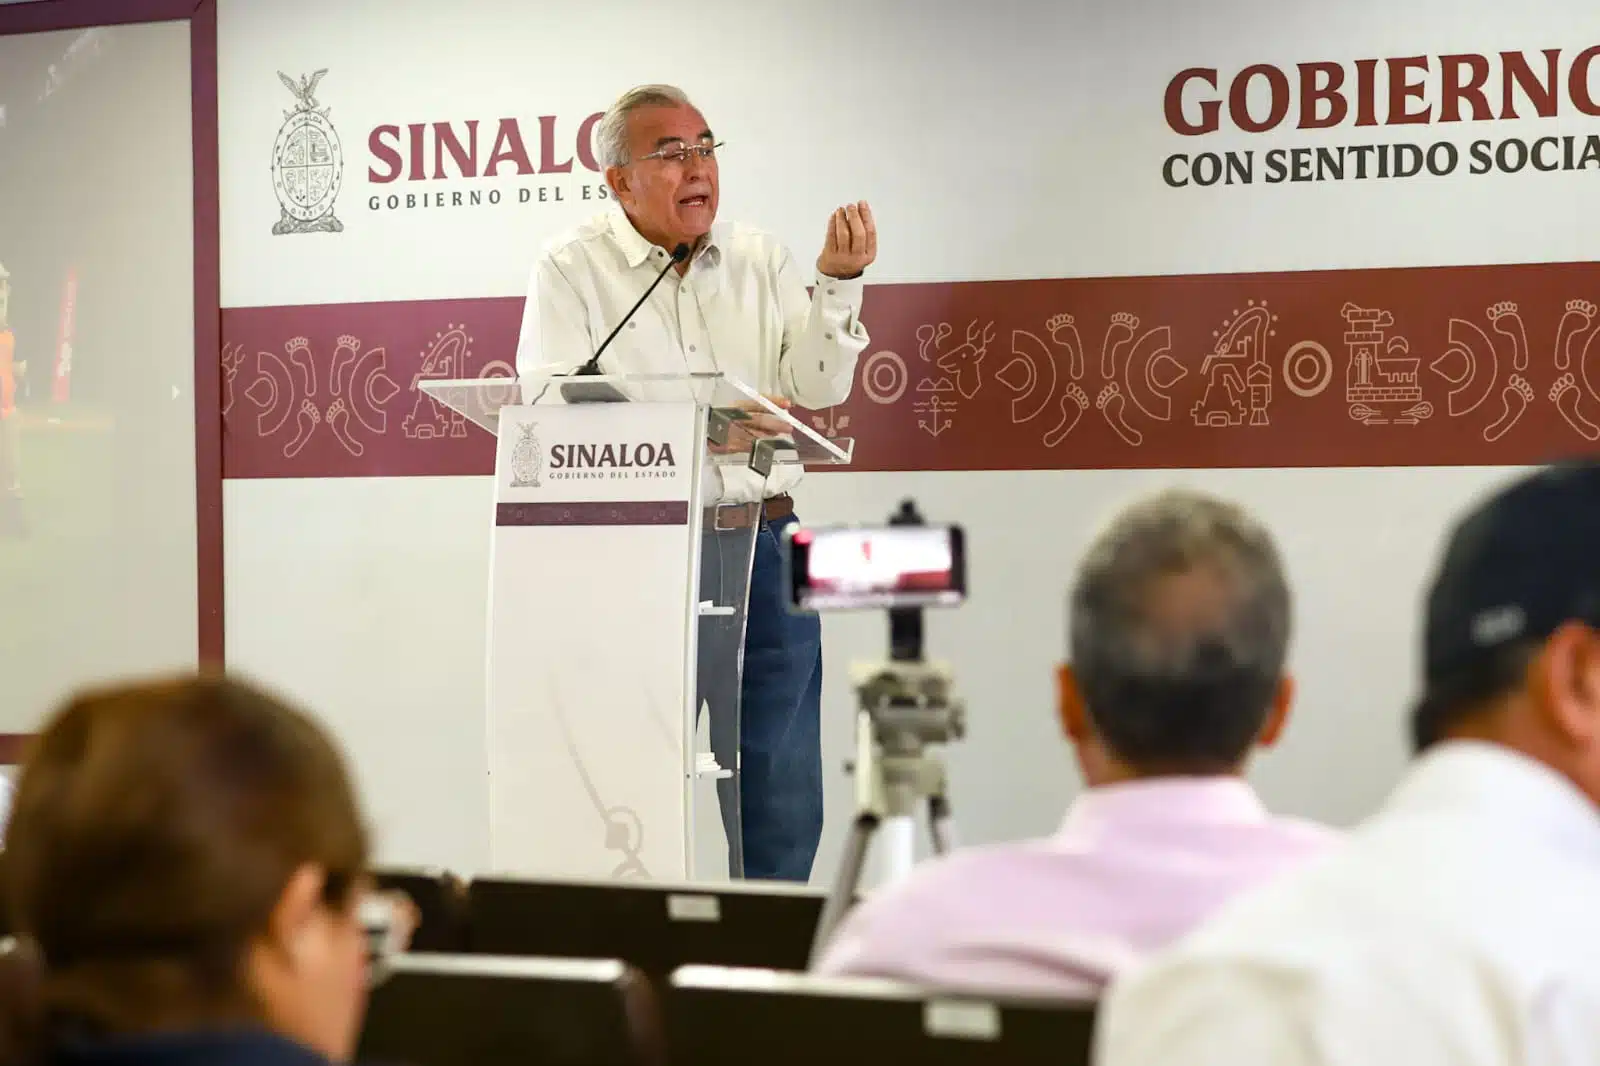 El gobernador de Sinaloa, Rubén Rocha Moya, durante la conferencia semanera